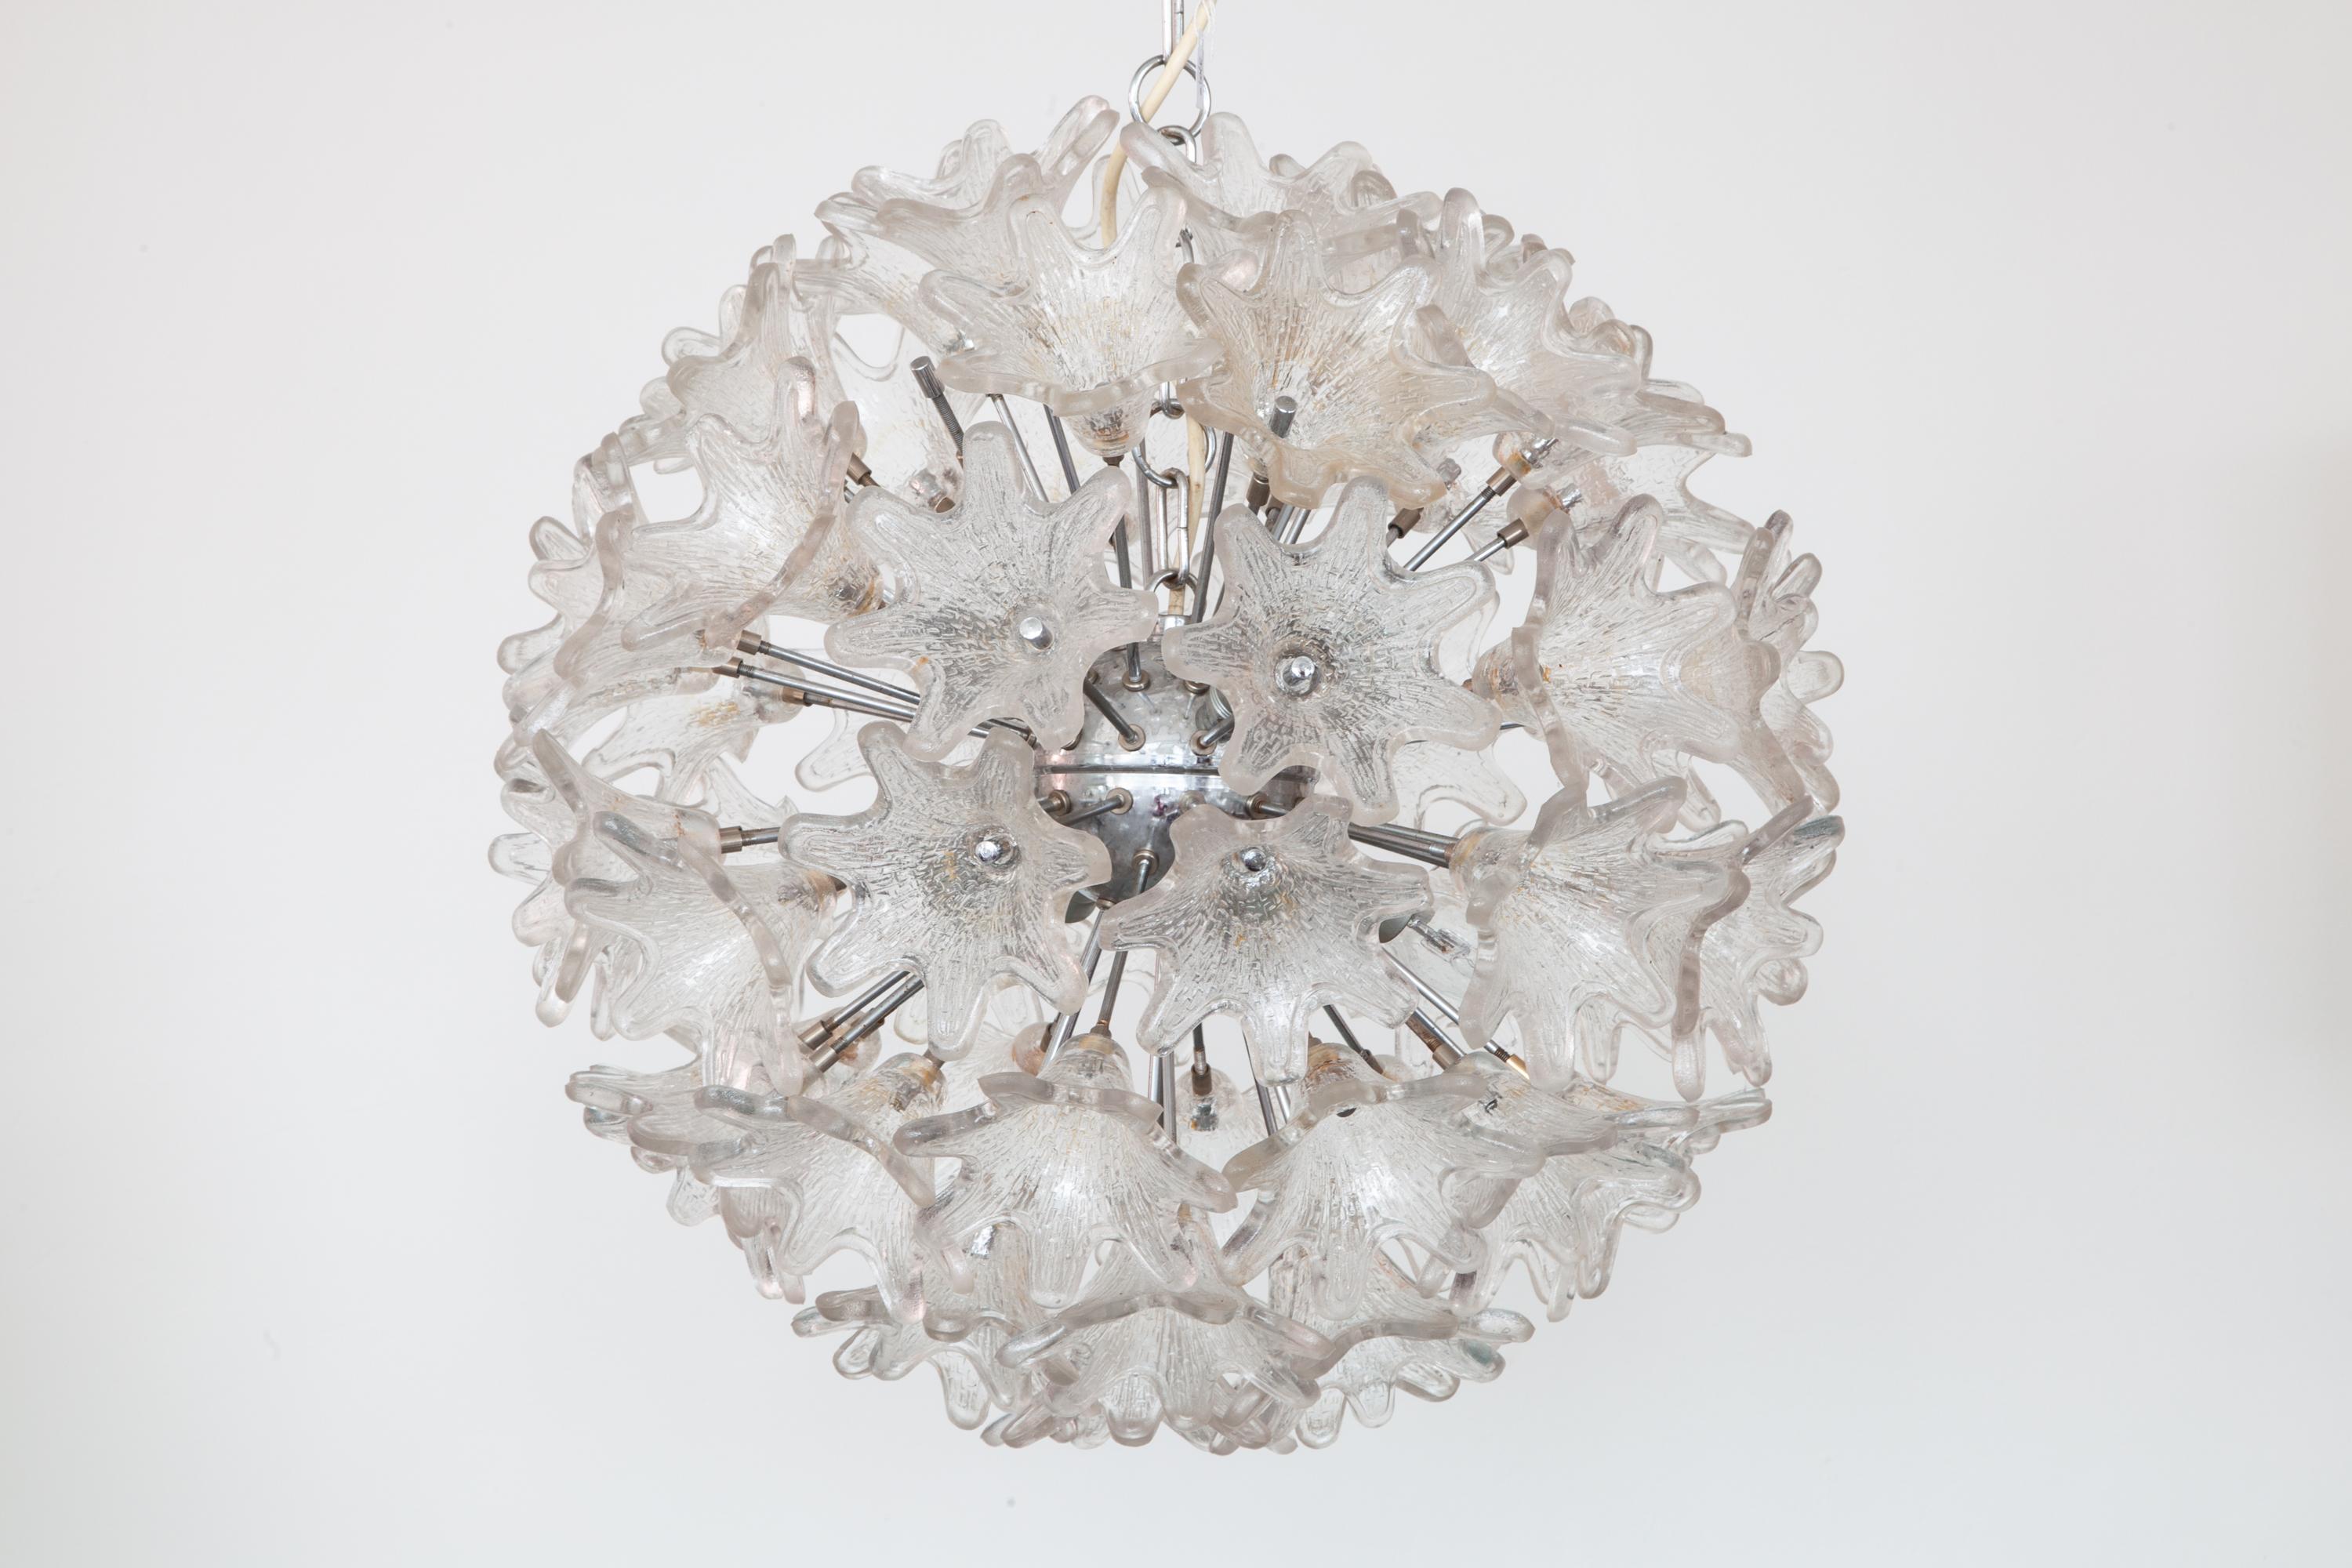 Lustre en forme de fleurs en verre de Murano, Sputnik de Paolo Venini pour VeArt, datant des années 1960, avec cadre chromé et recouvert de fleurs en verre moulé à structure de glace.
Une belle apparence naturelle claire comme un bijou dans votre